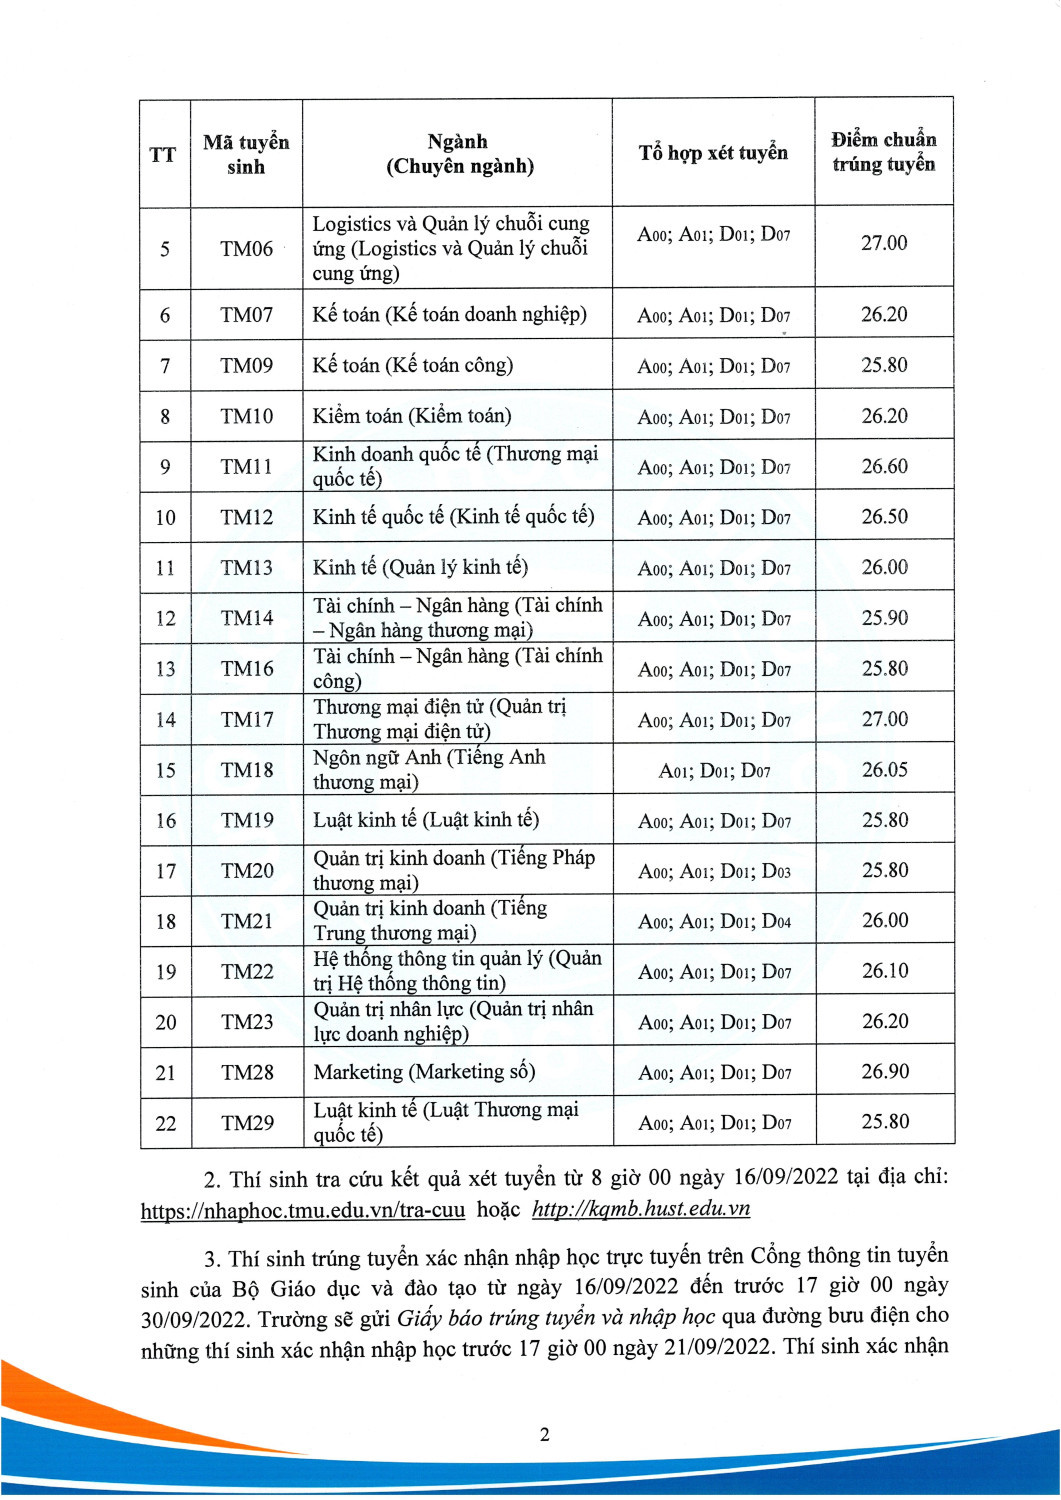 Thông báo điểm chuẩn trúng tuyển ĐHCQ 2022, theo PT xét KQT THPT CTĐT chuẩn New Page 2